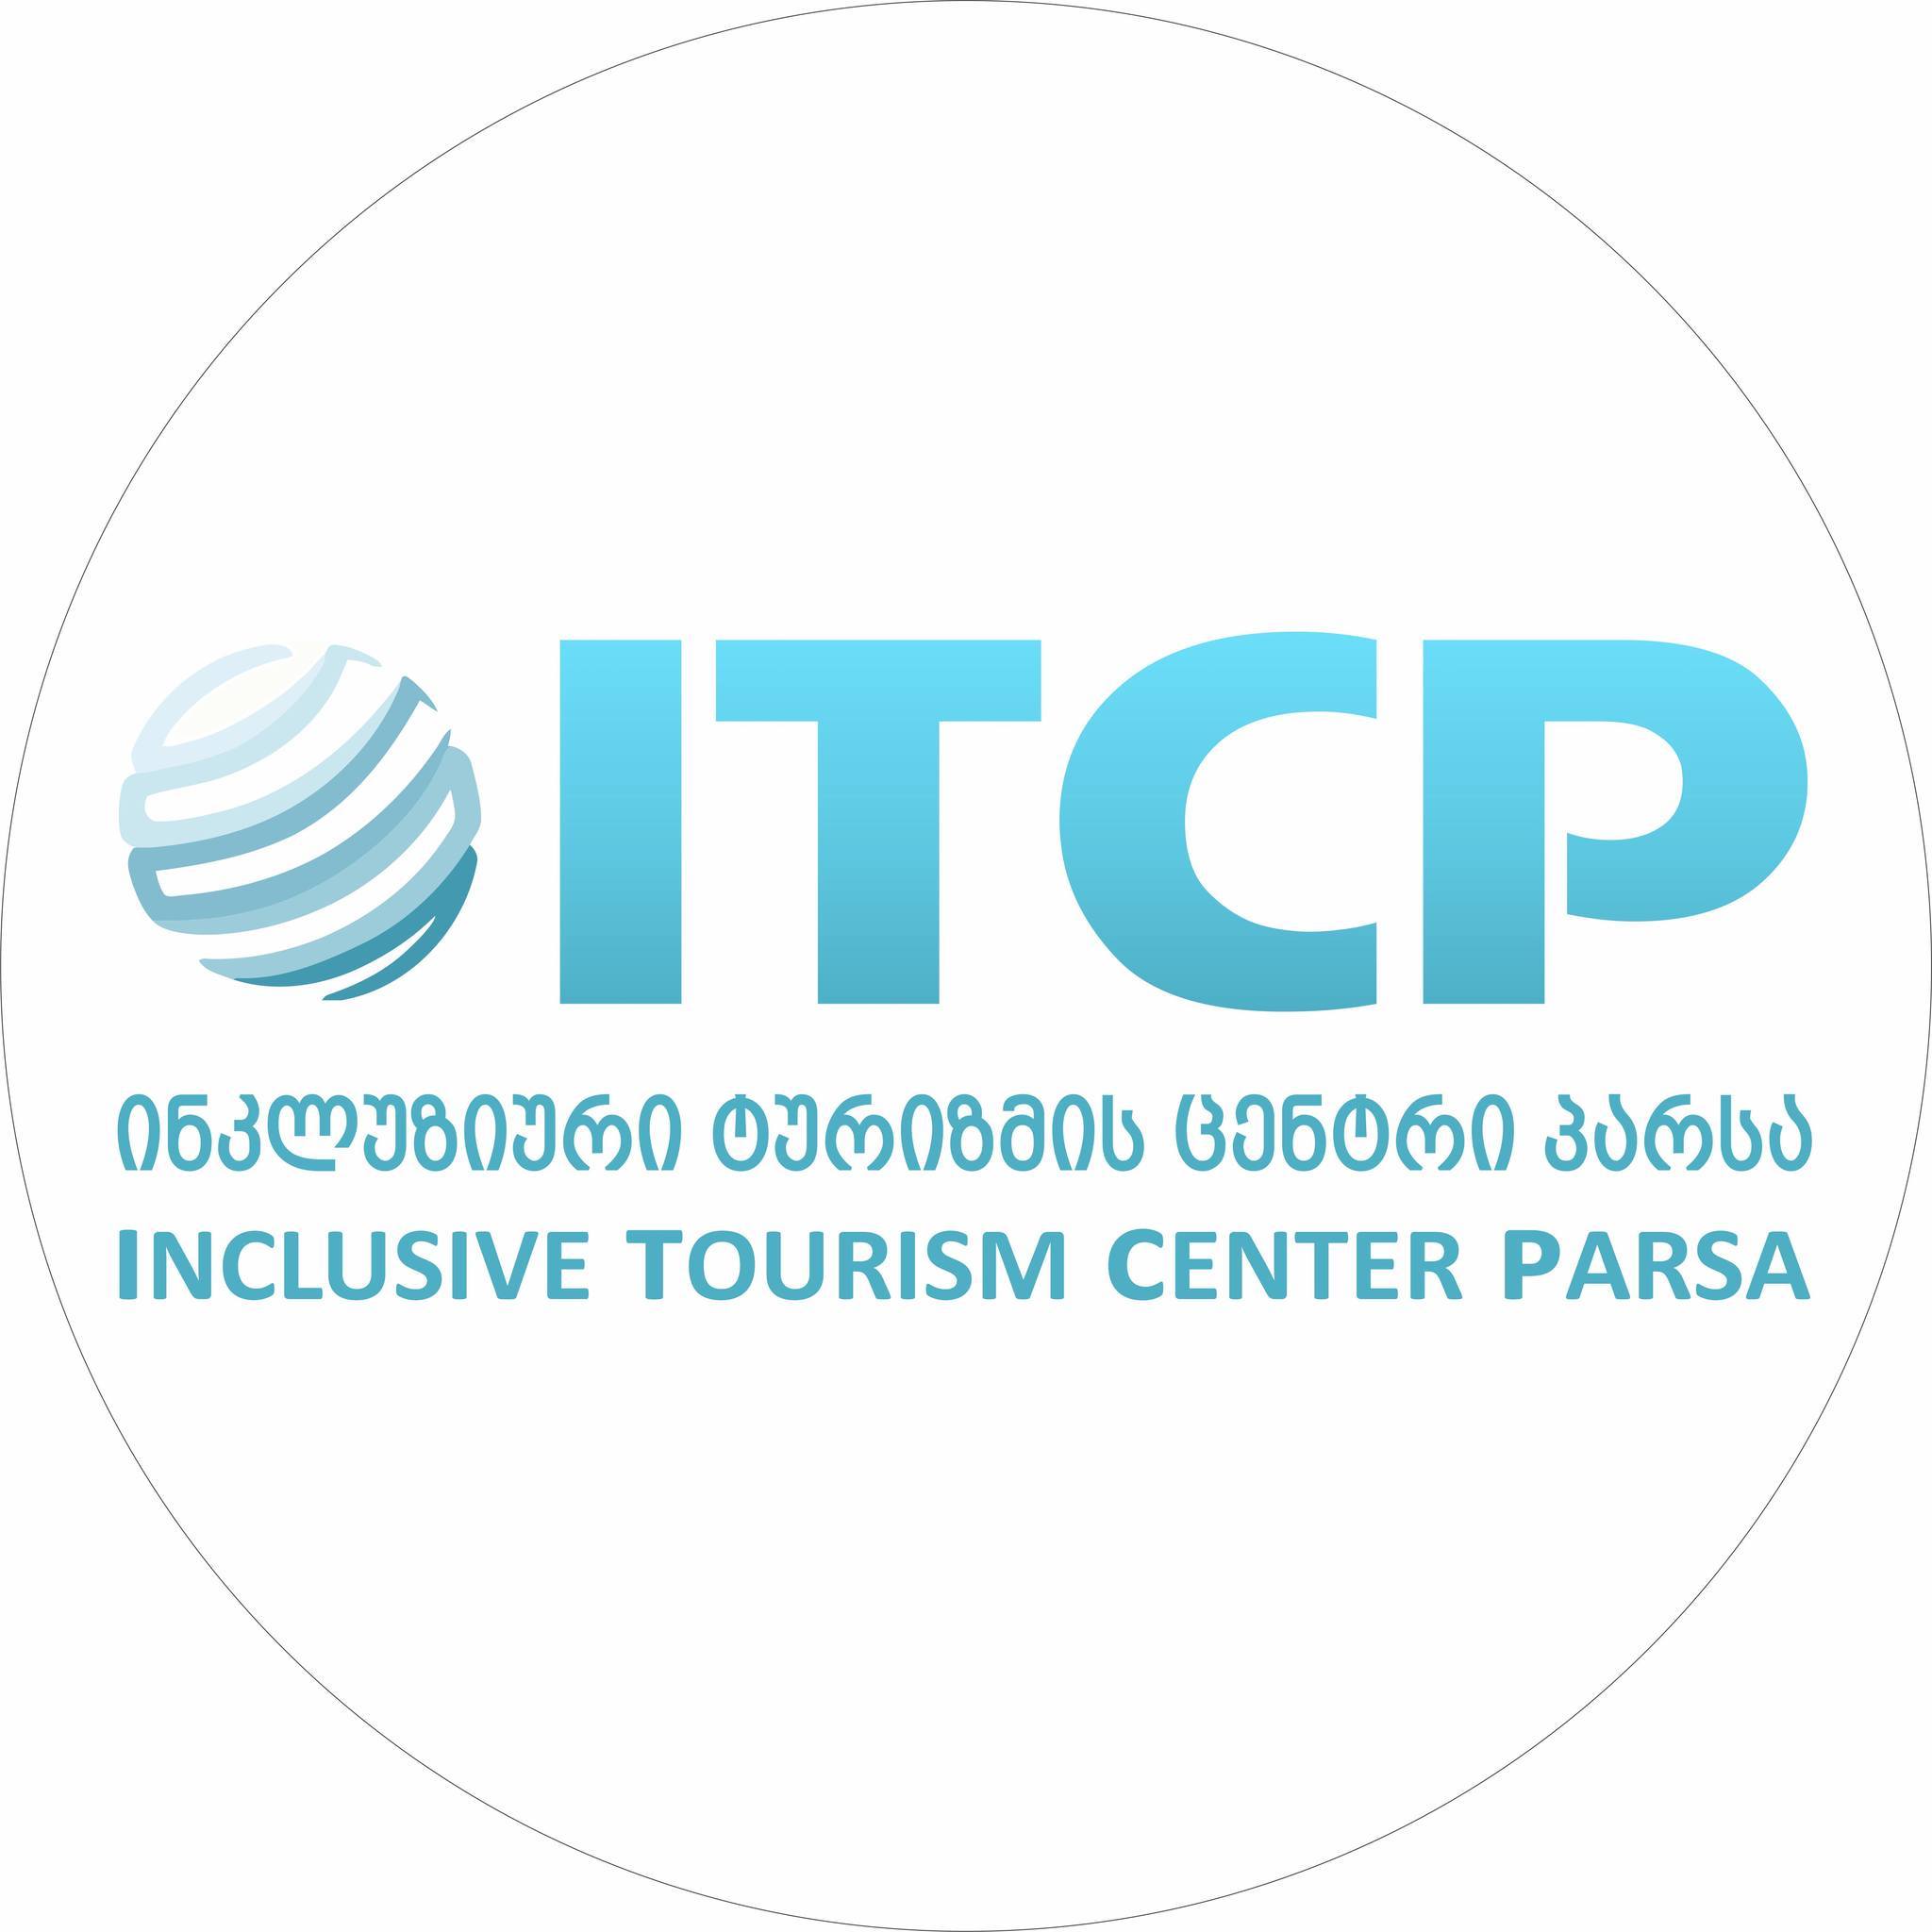 Inclusive Tourism Center PARSA